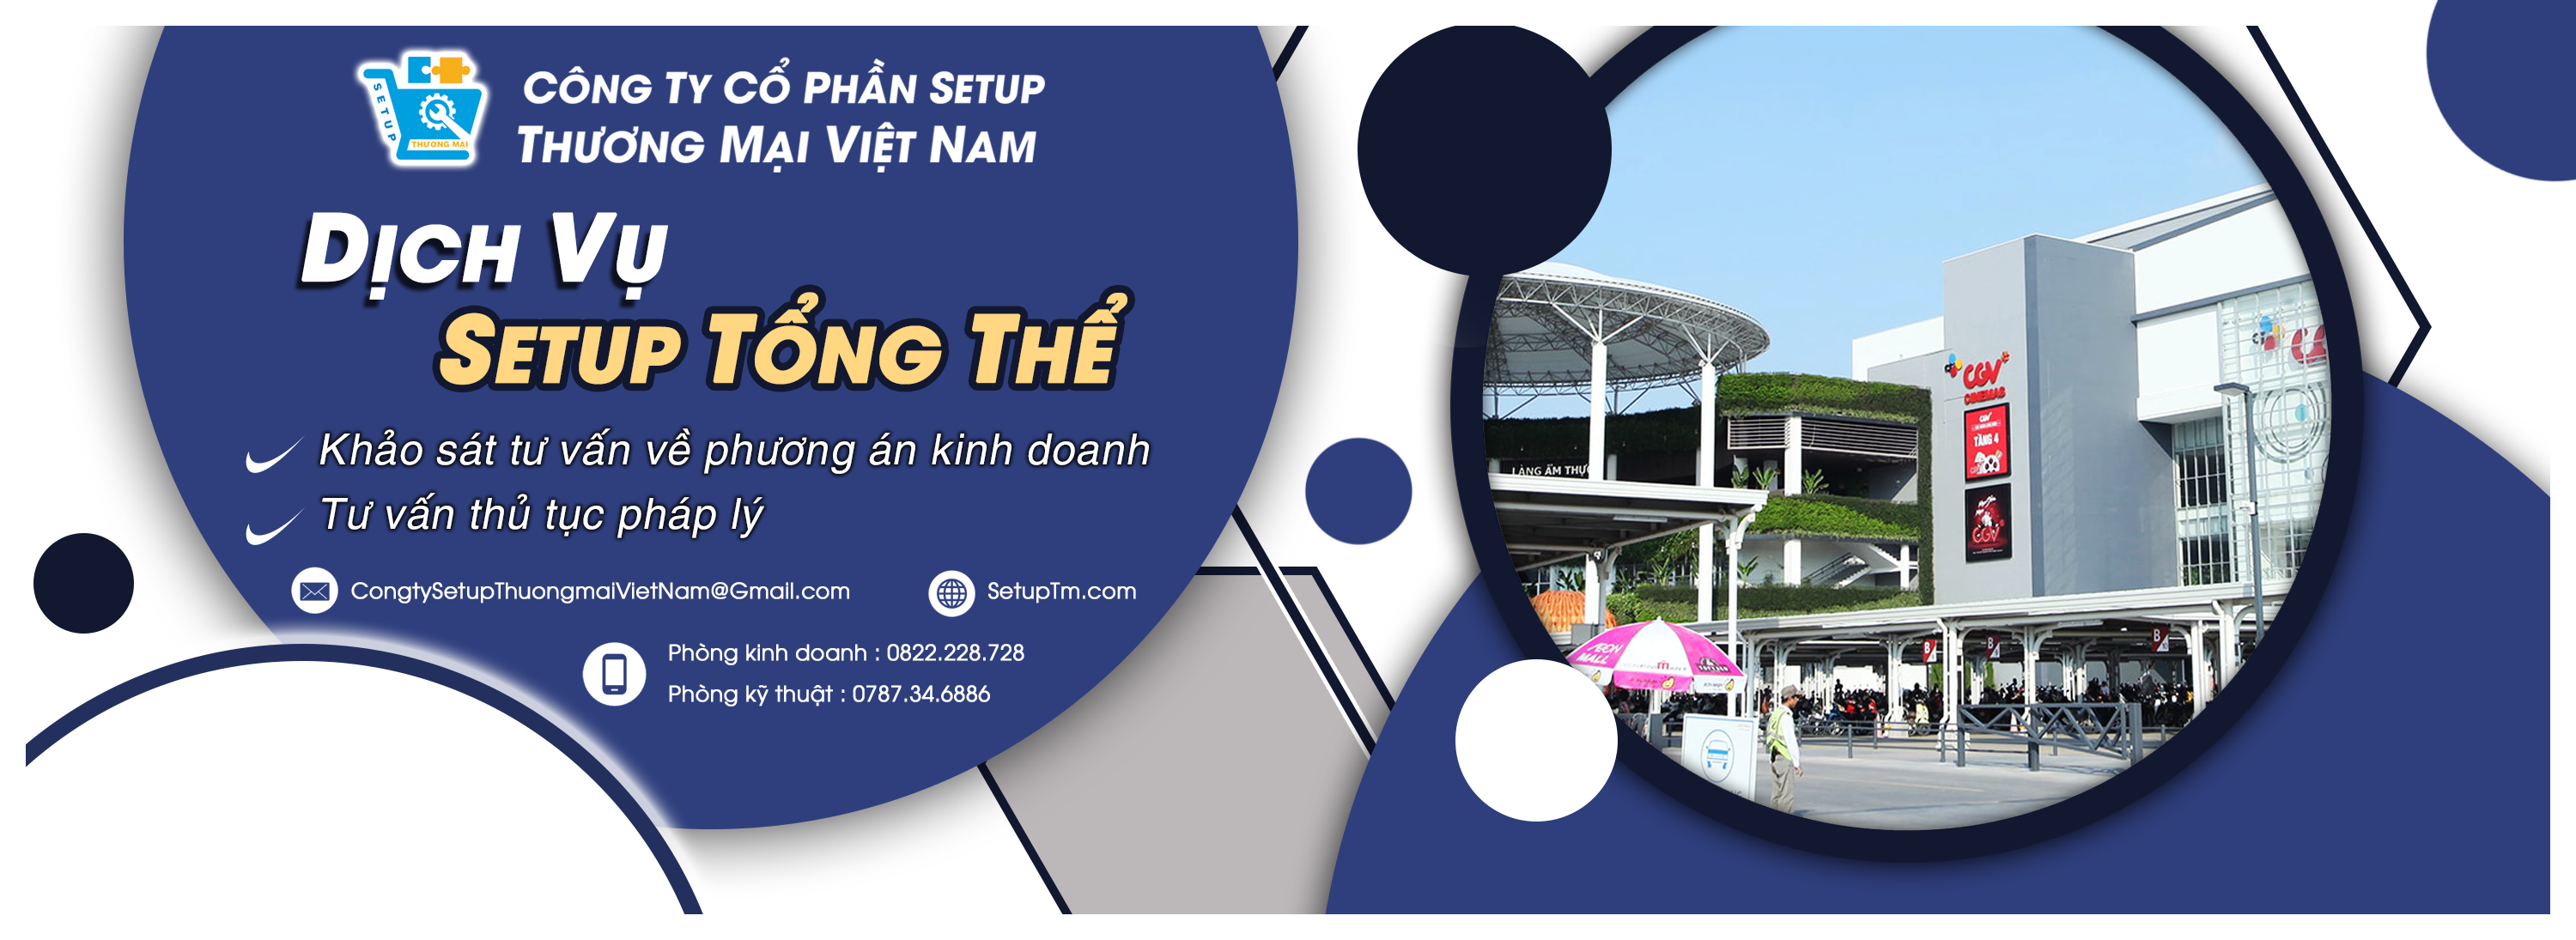 Setup Siêu Thị - Công Ty Setup Thương Mại Việt Nam